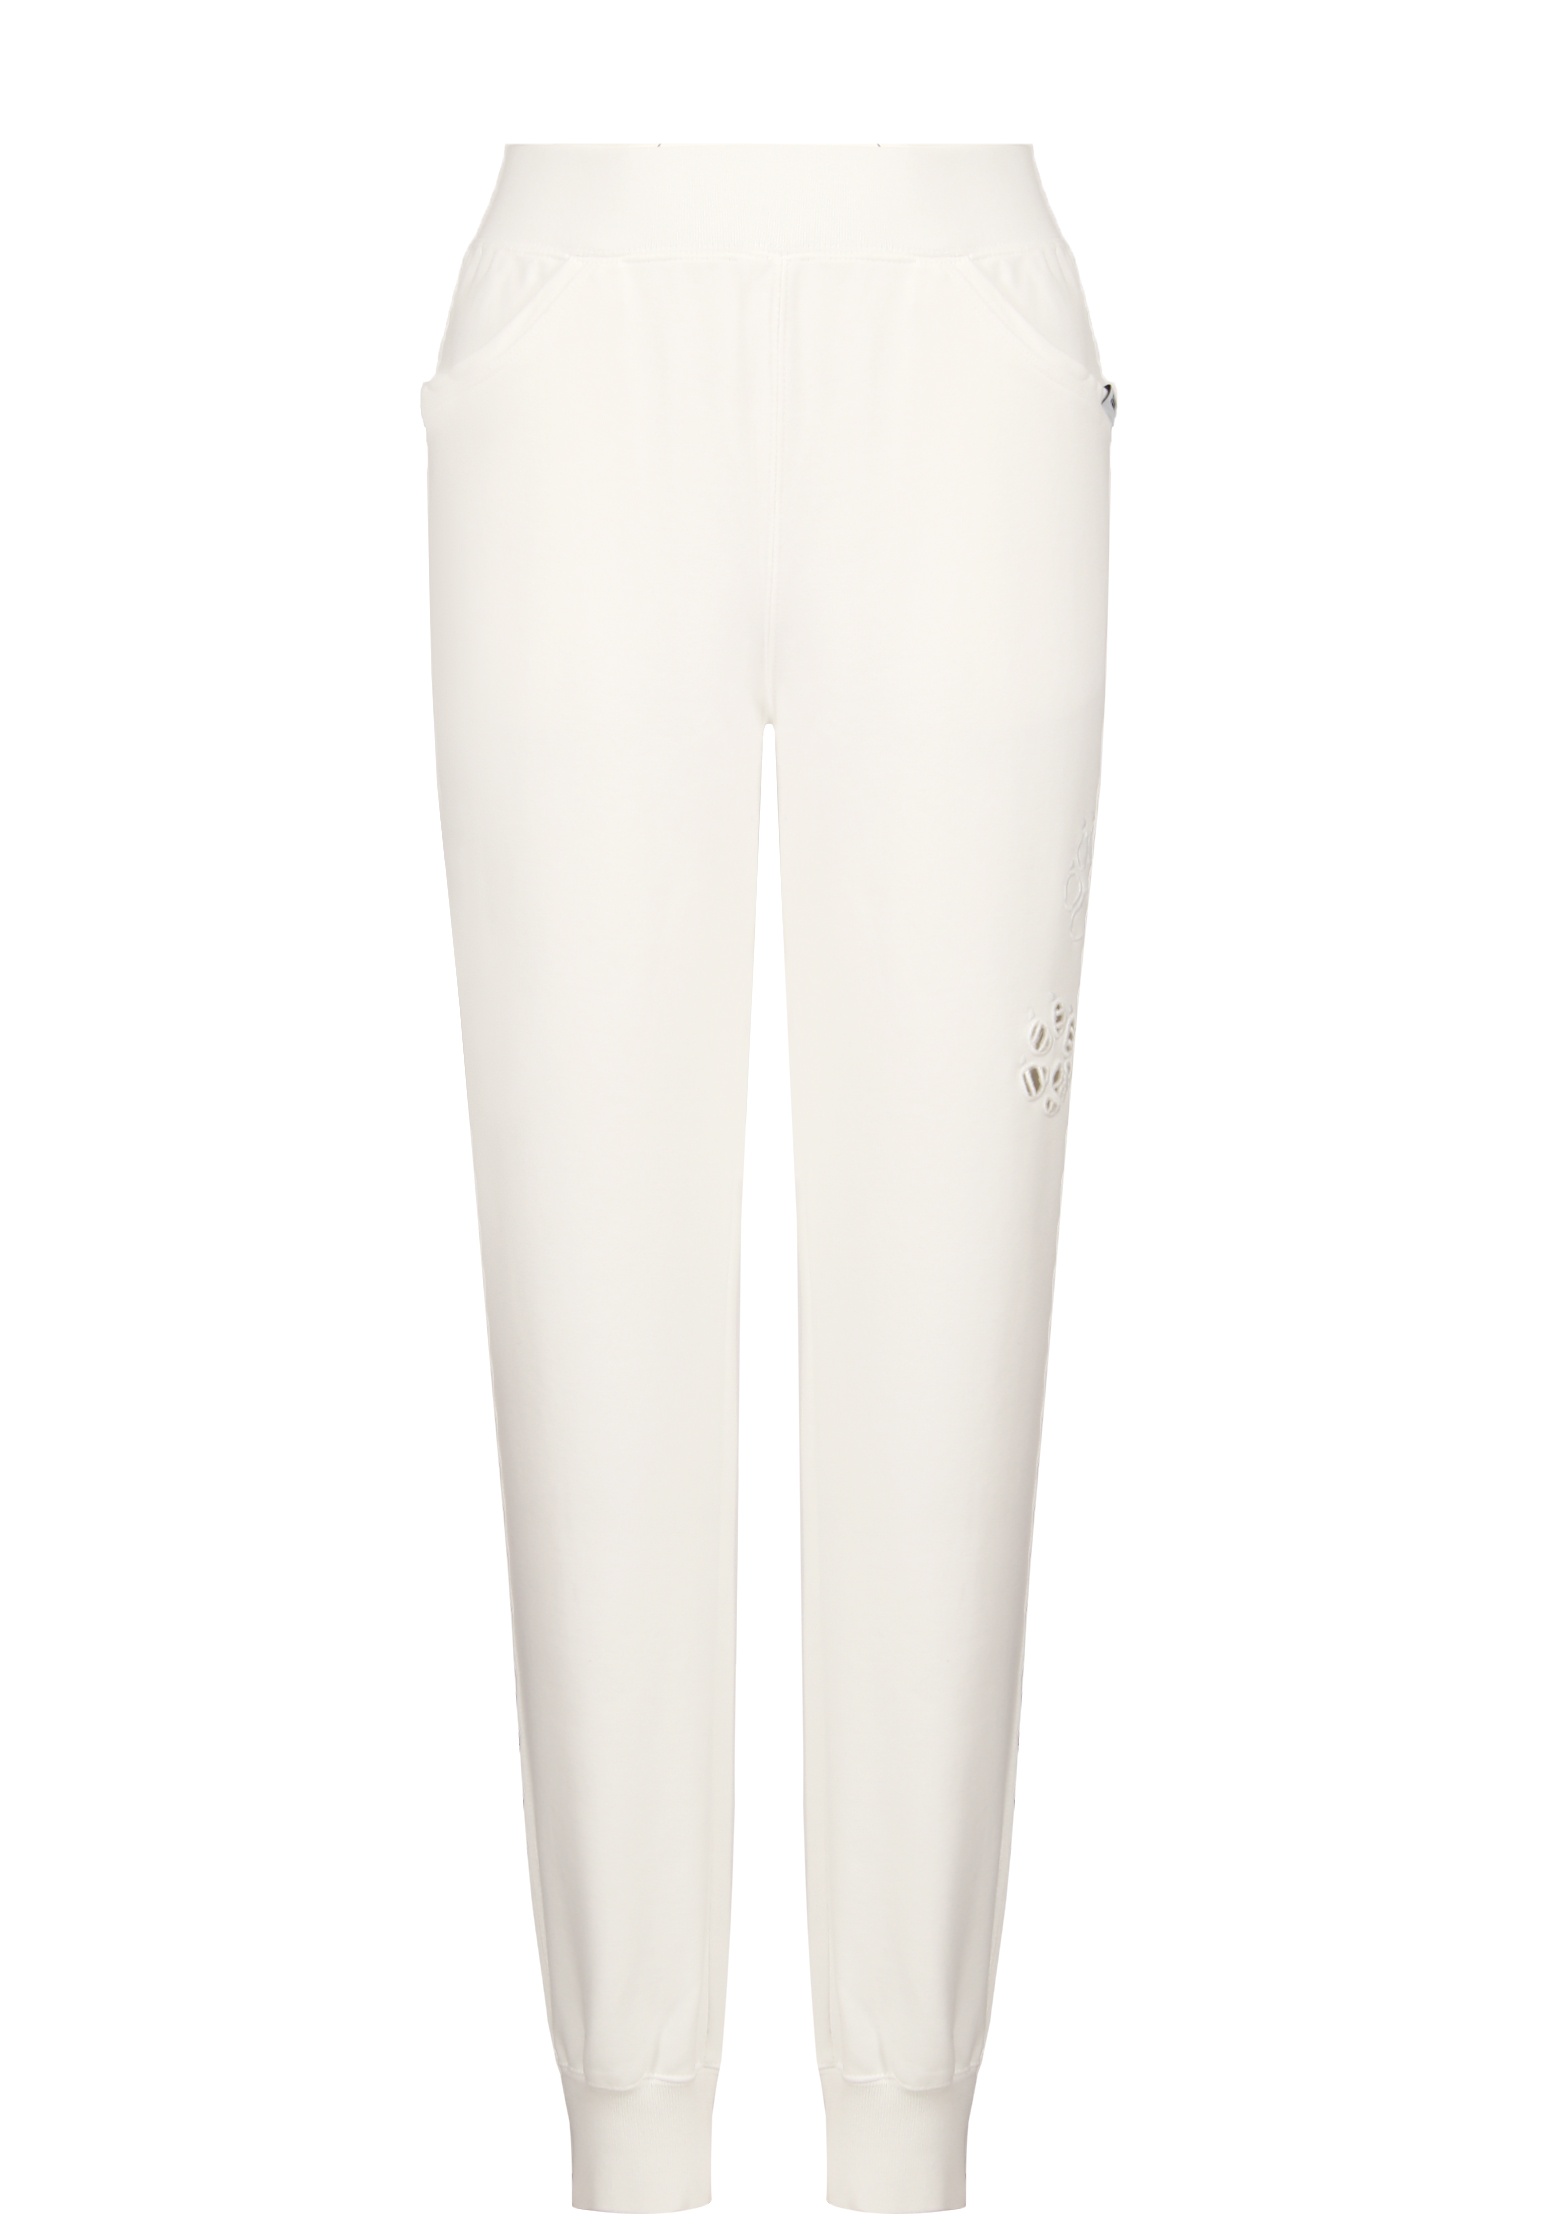 Спортивные брюки женские Ermanno Scervino 140145 белые XS